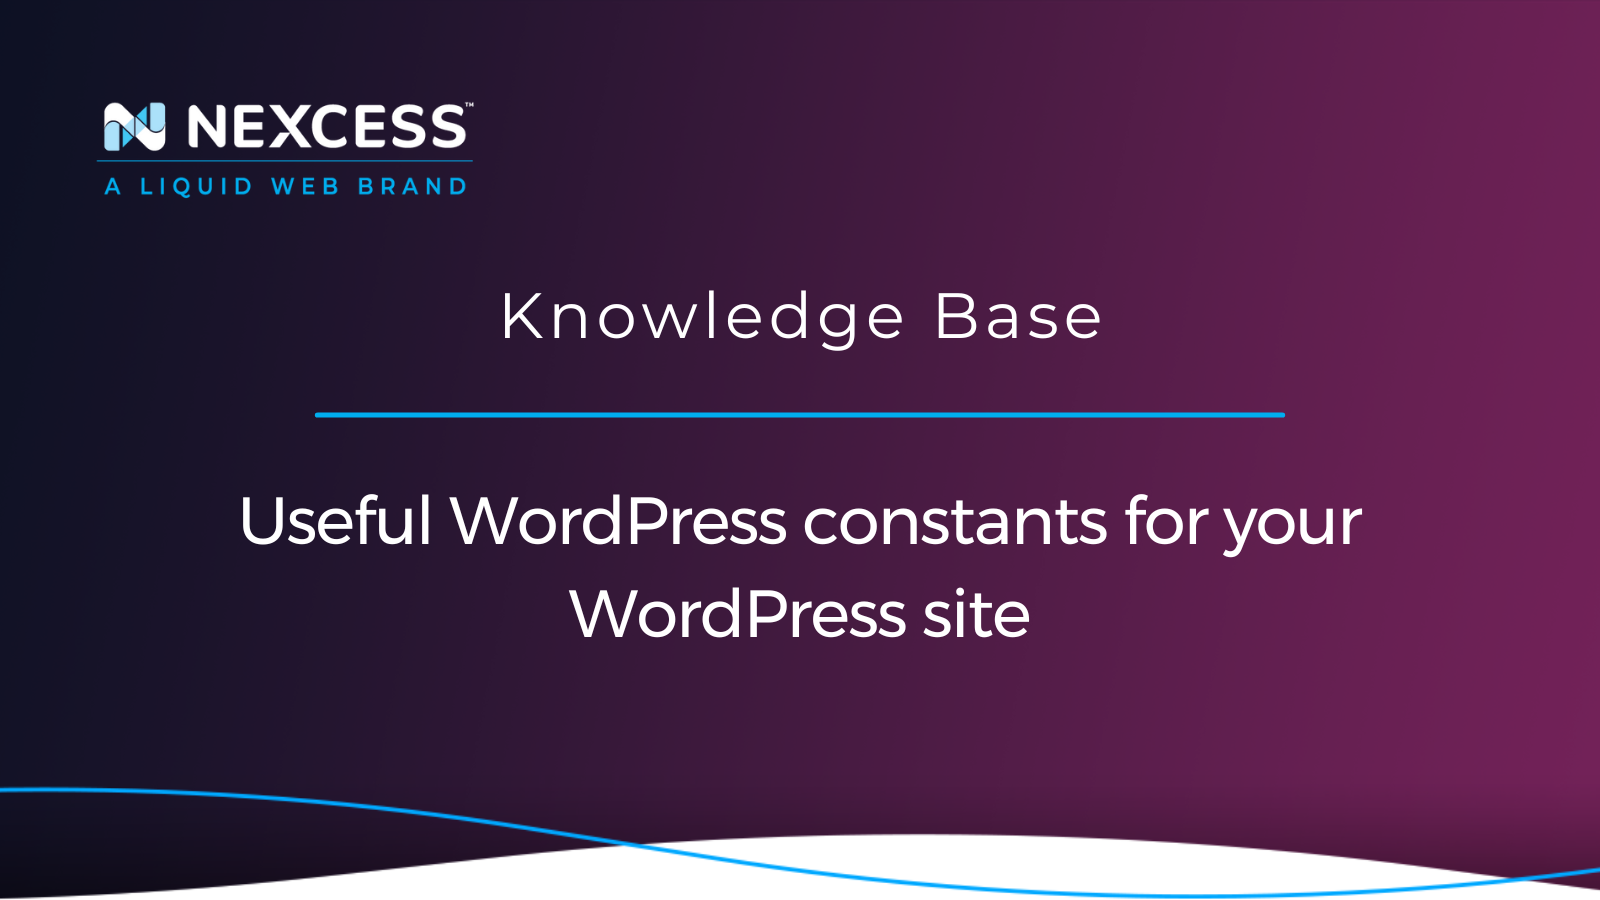 Useful WordPress constants for your WordPress site